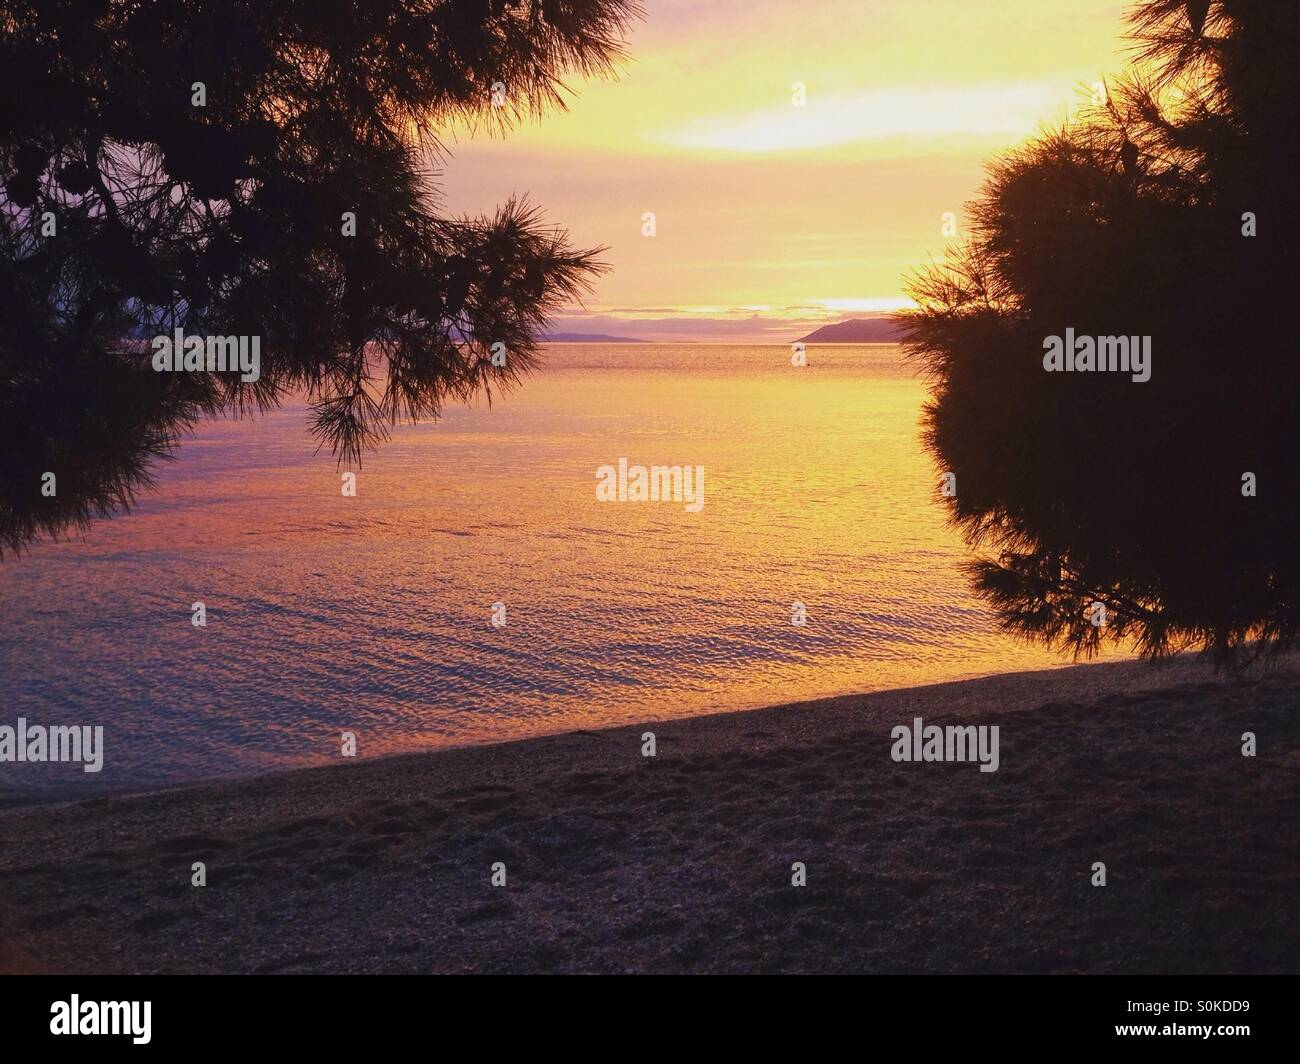 Sunset on beach in Croatia Stock Photo